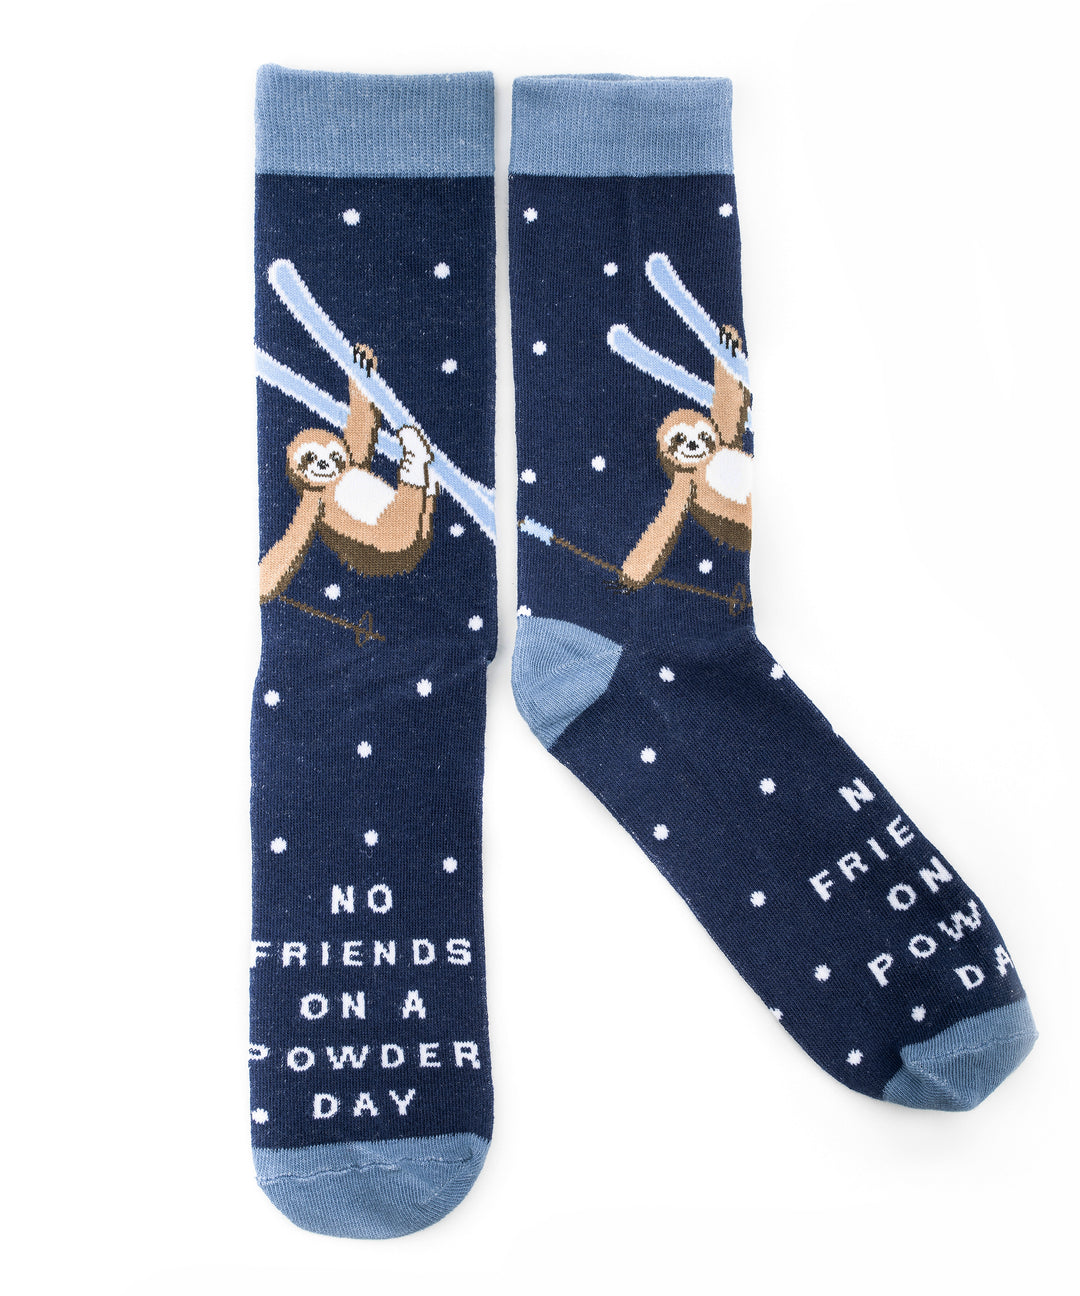 No Sloth Friends On A Powder Day Dark Blue Socks